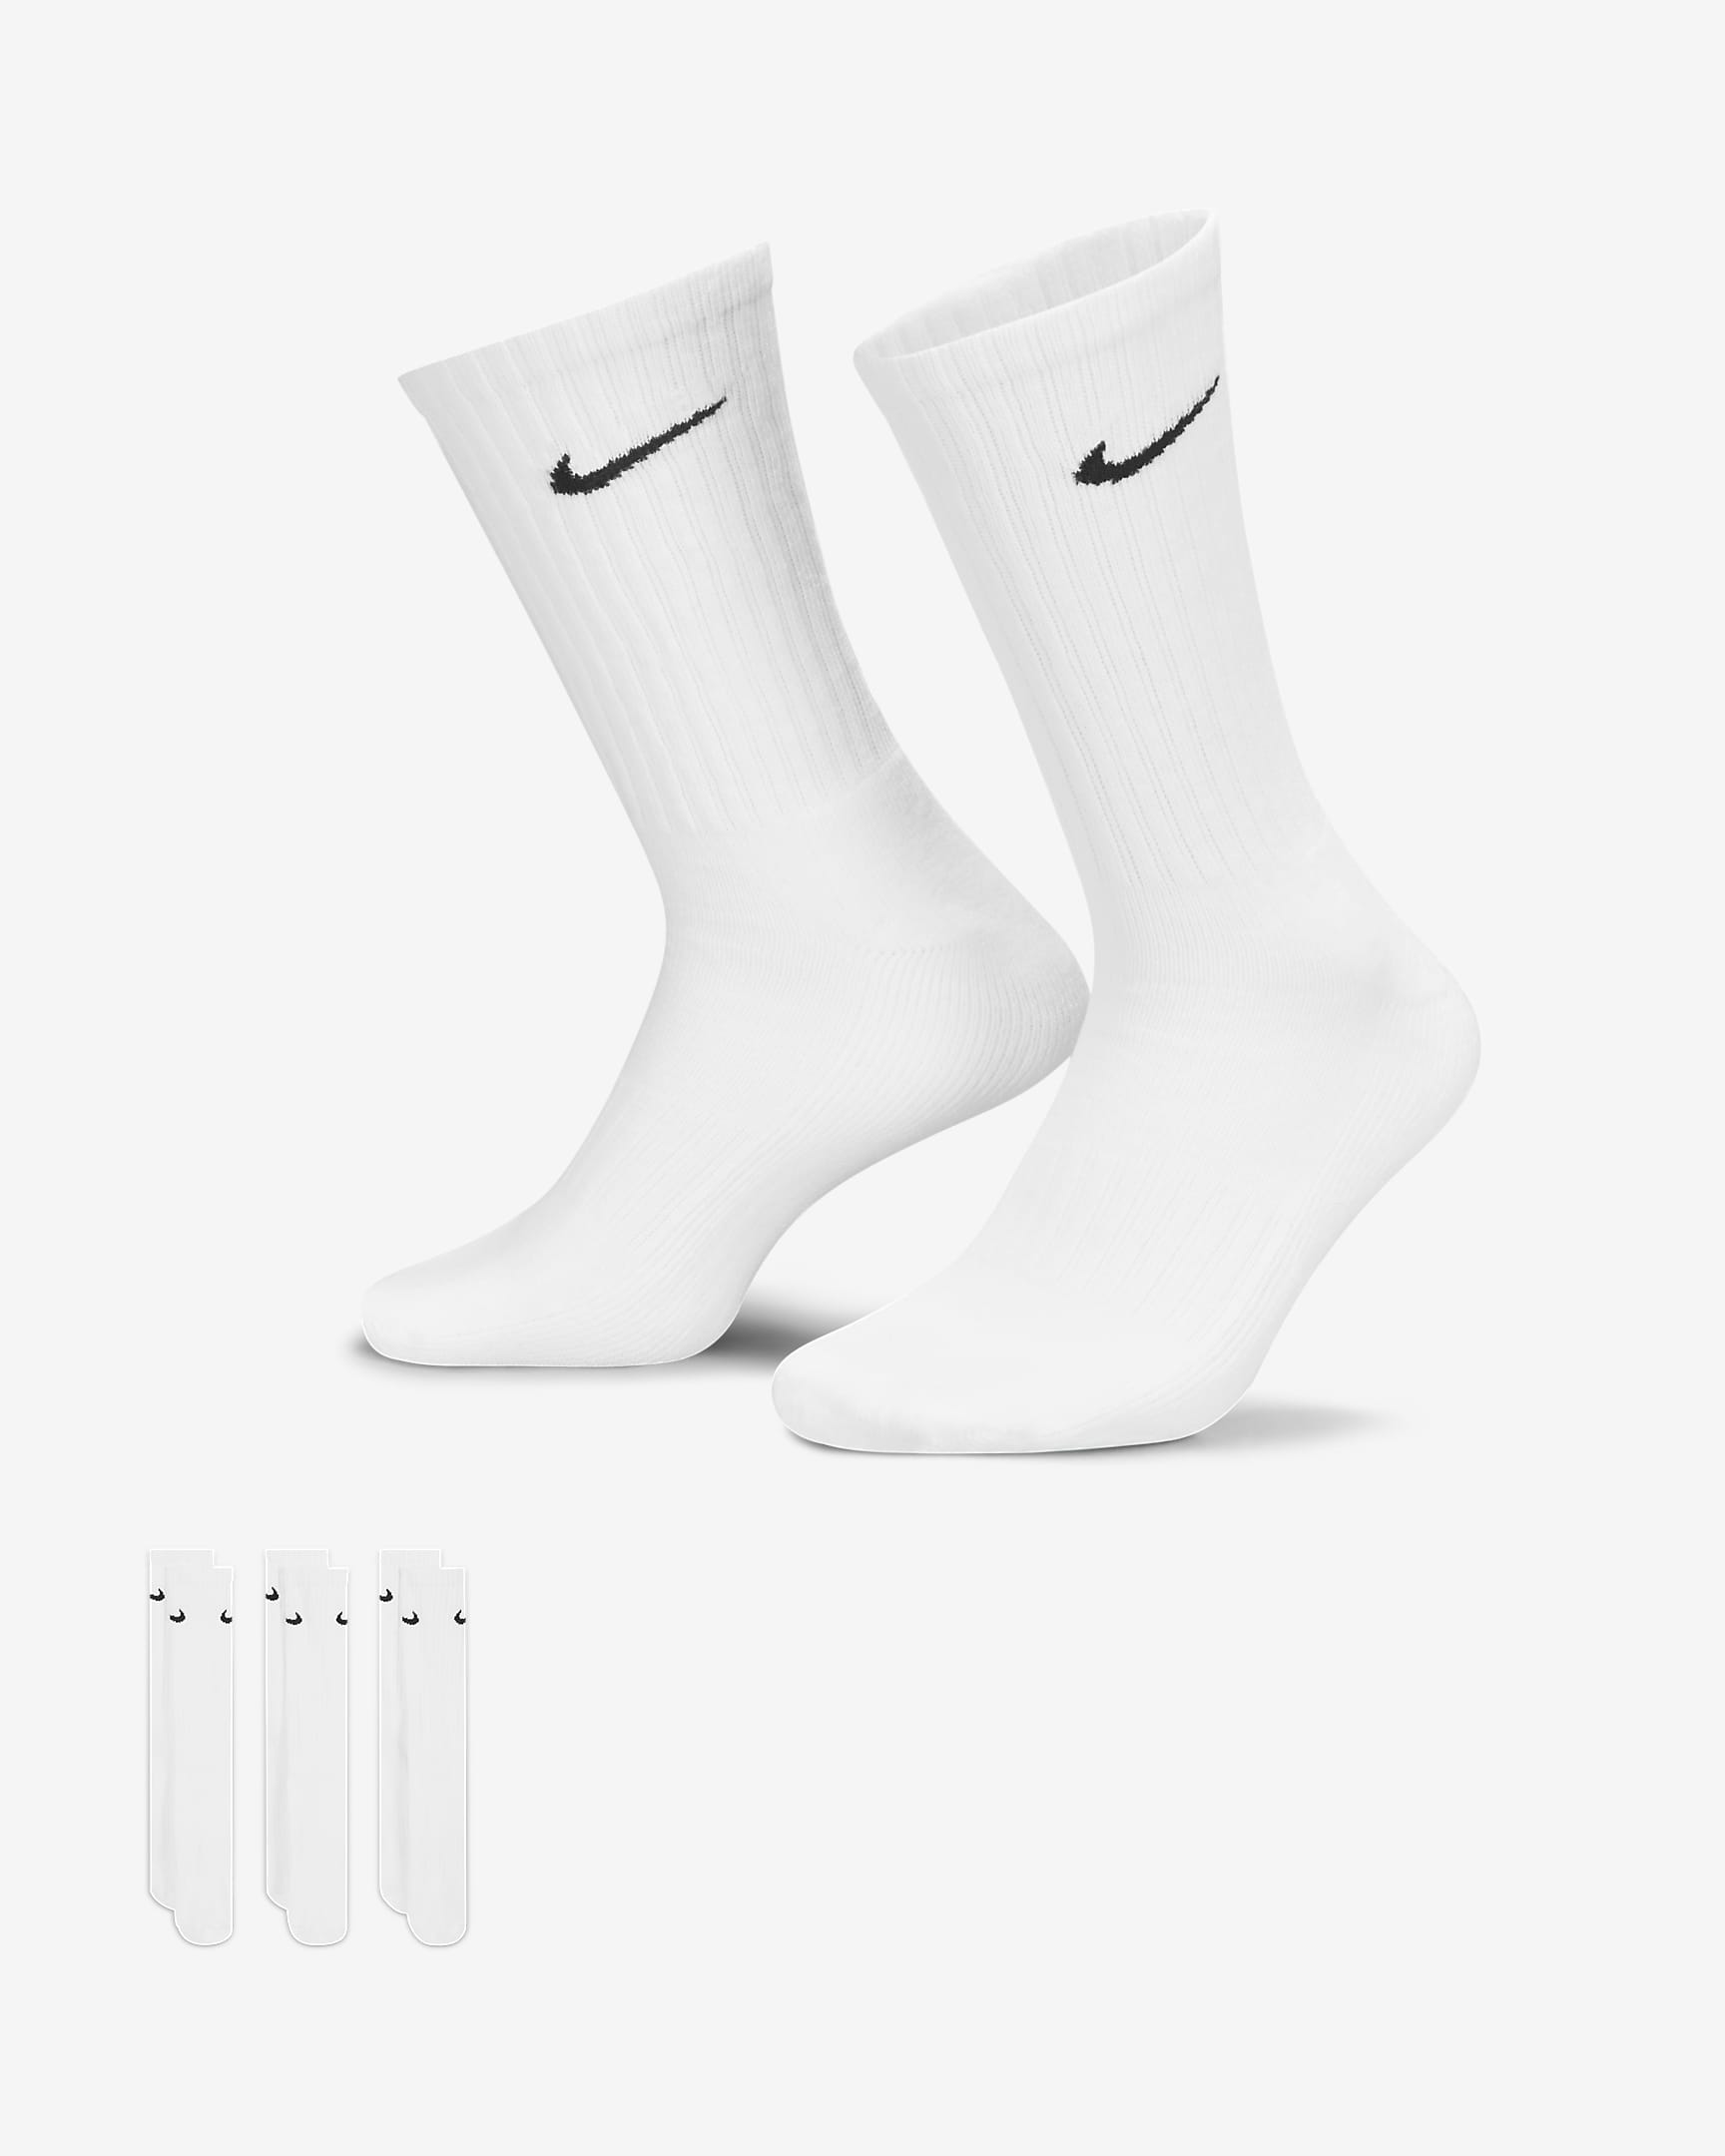 Chaussettes de training mi-mollet Nike Cushioned (3 paires) - Blanc/Noir